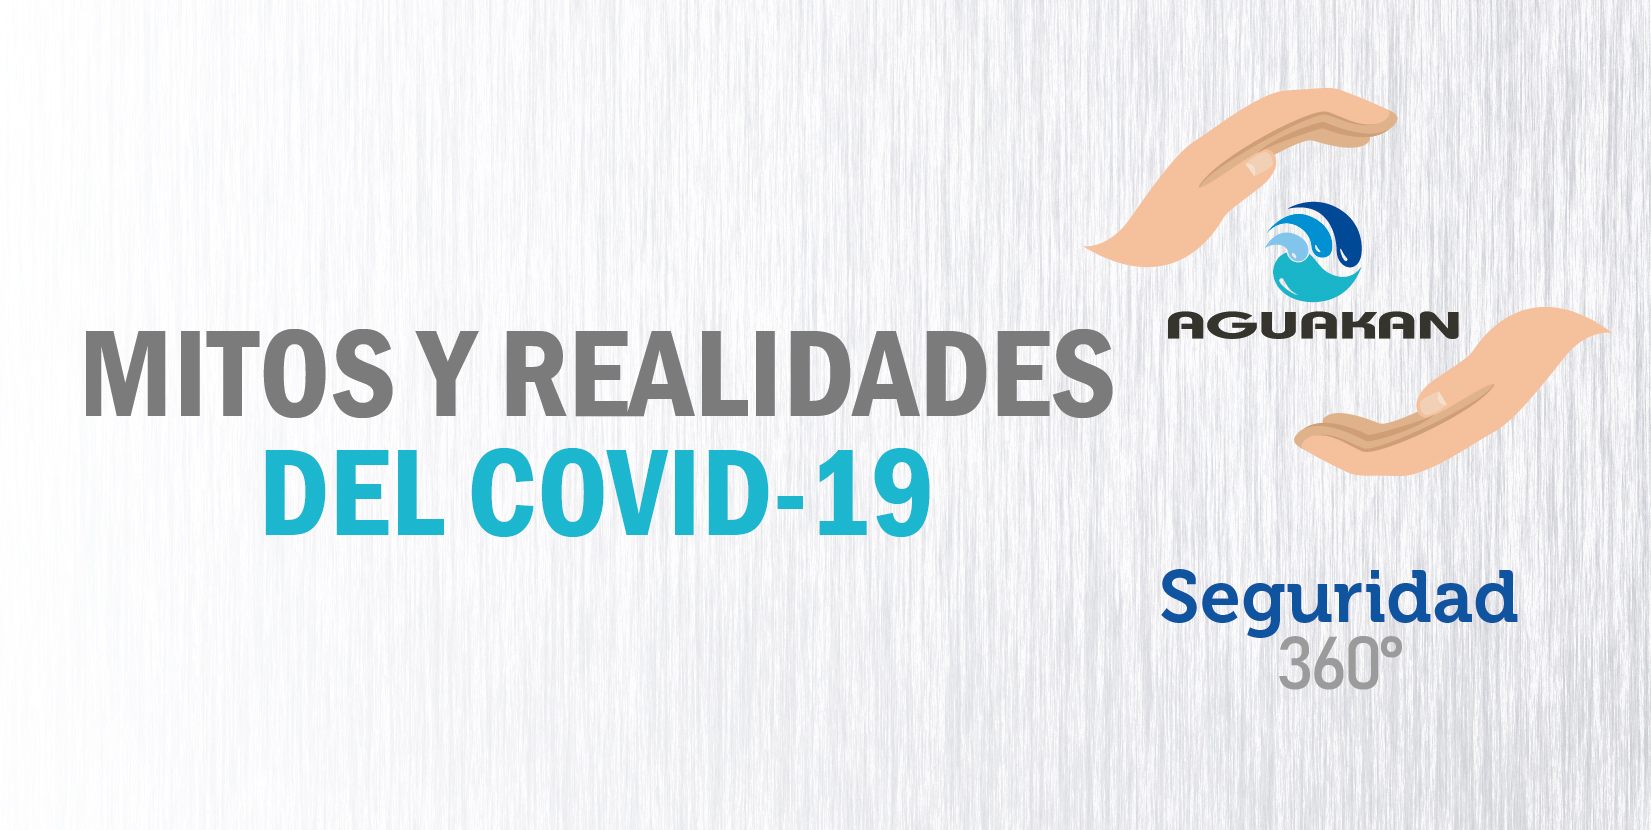 MITOS Y REALIDADES DEL COVID-19